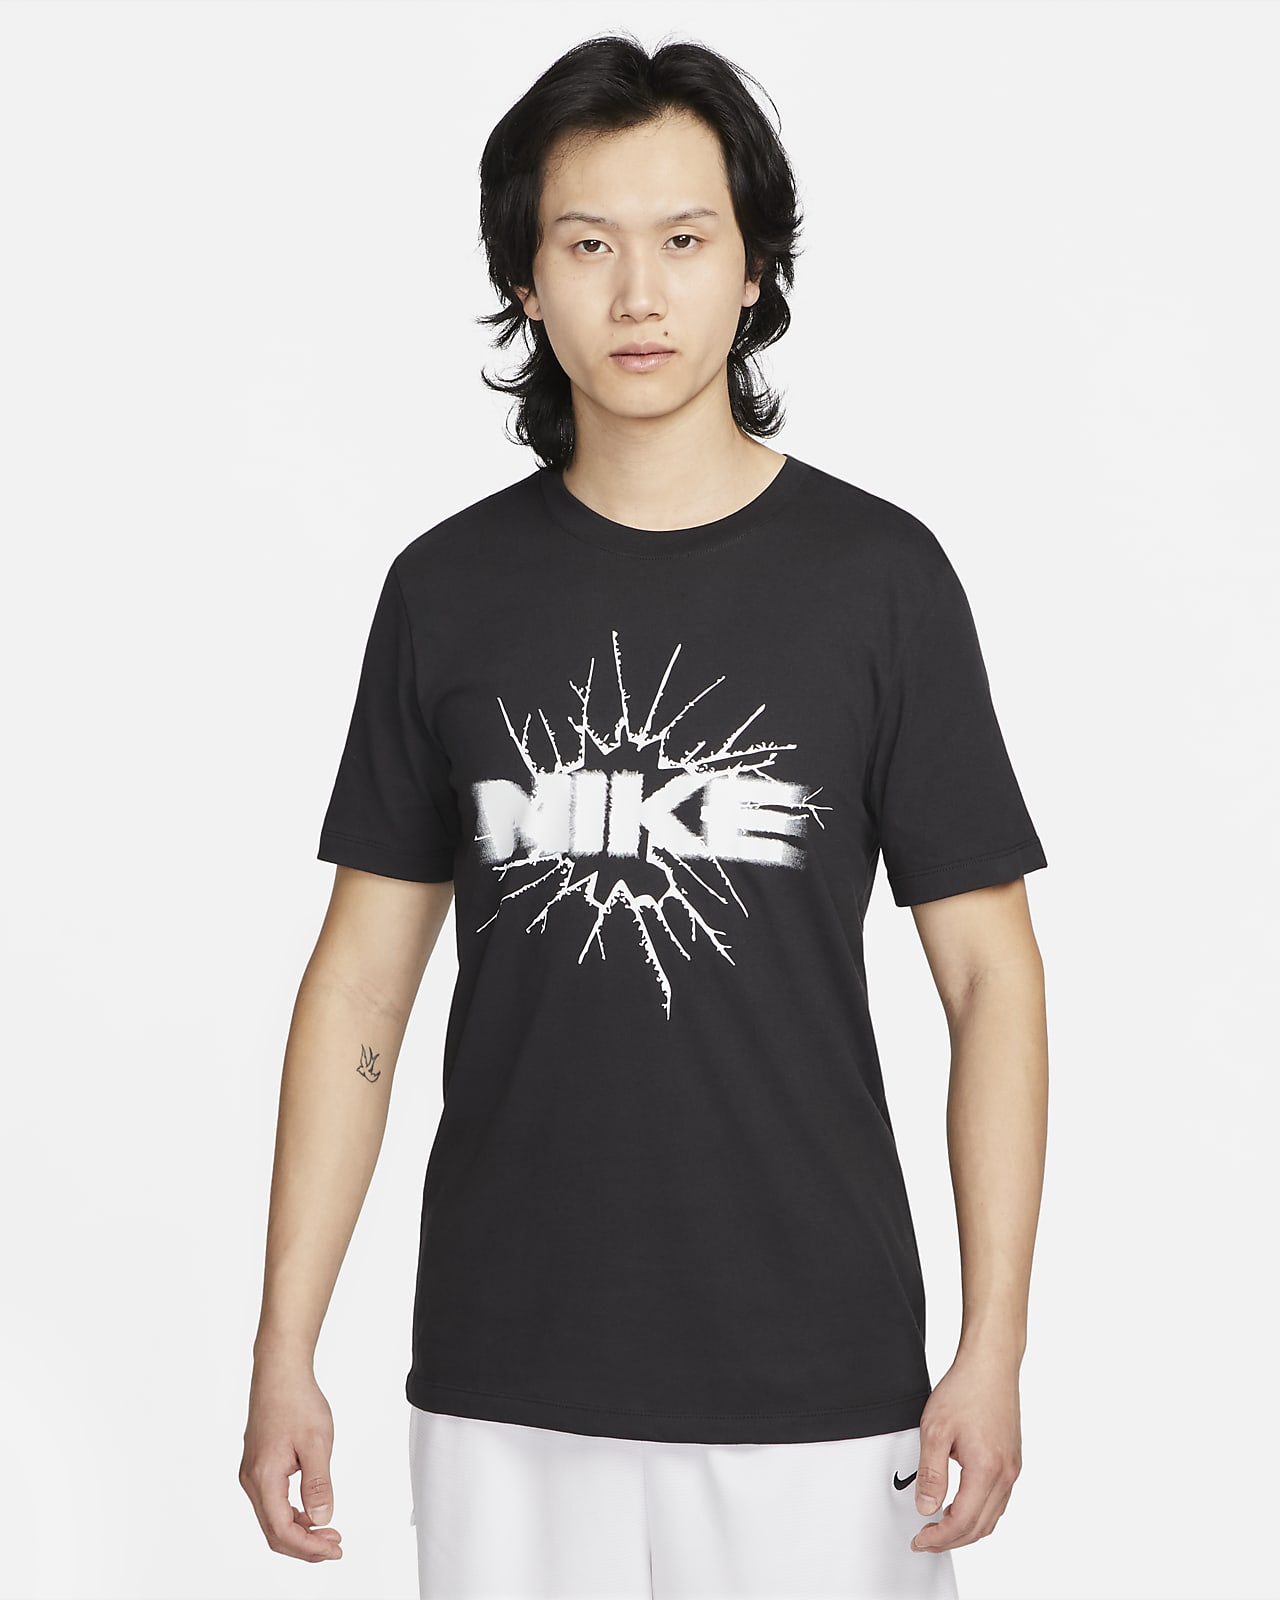 NIKE ナイキ ワールドツアー セットアップ XL  Tシャツ ハーフパンツ